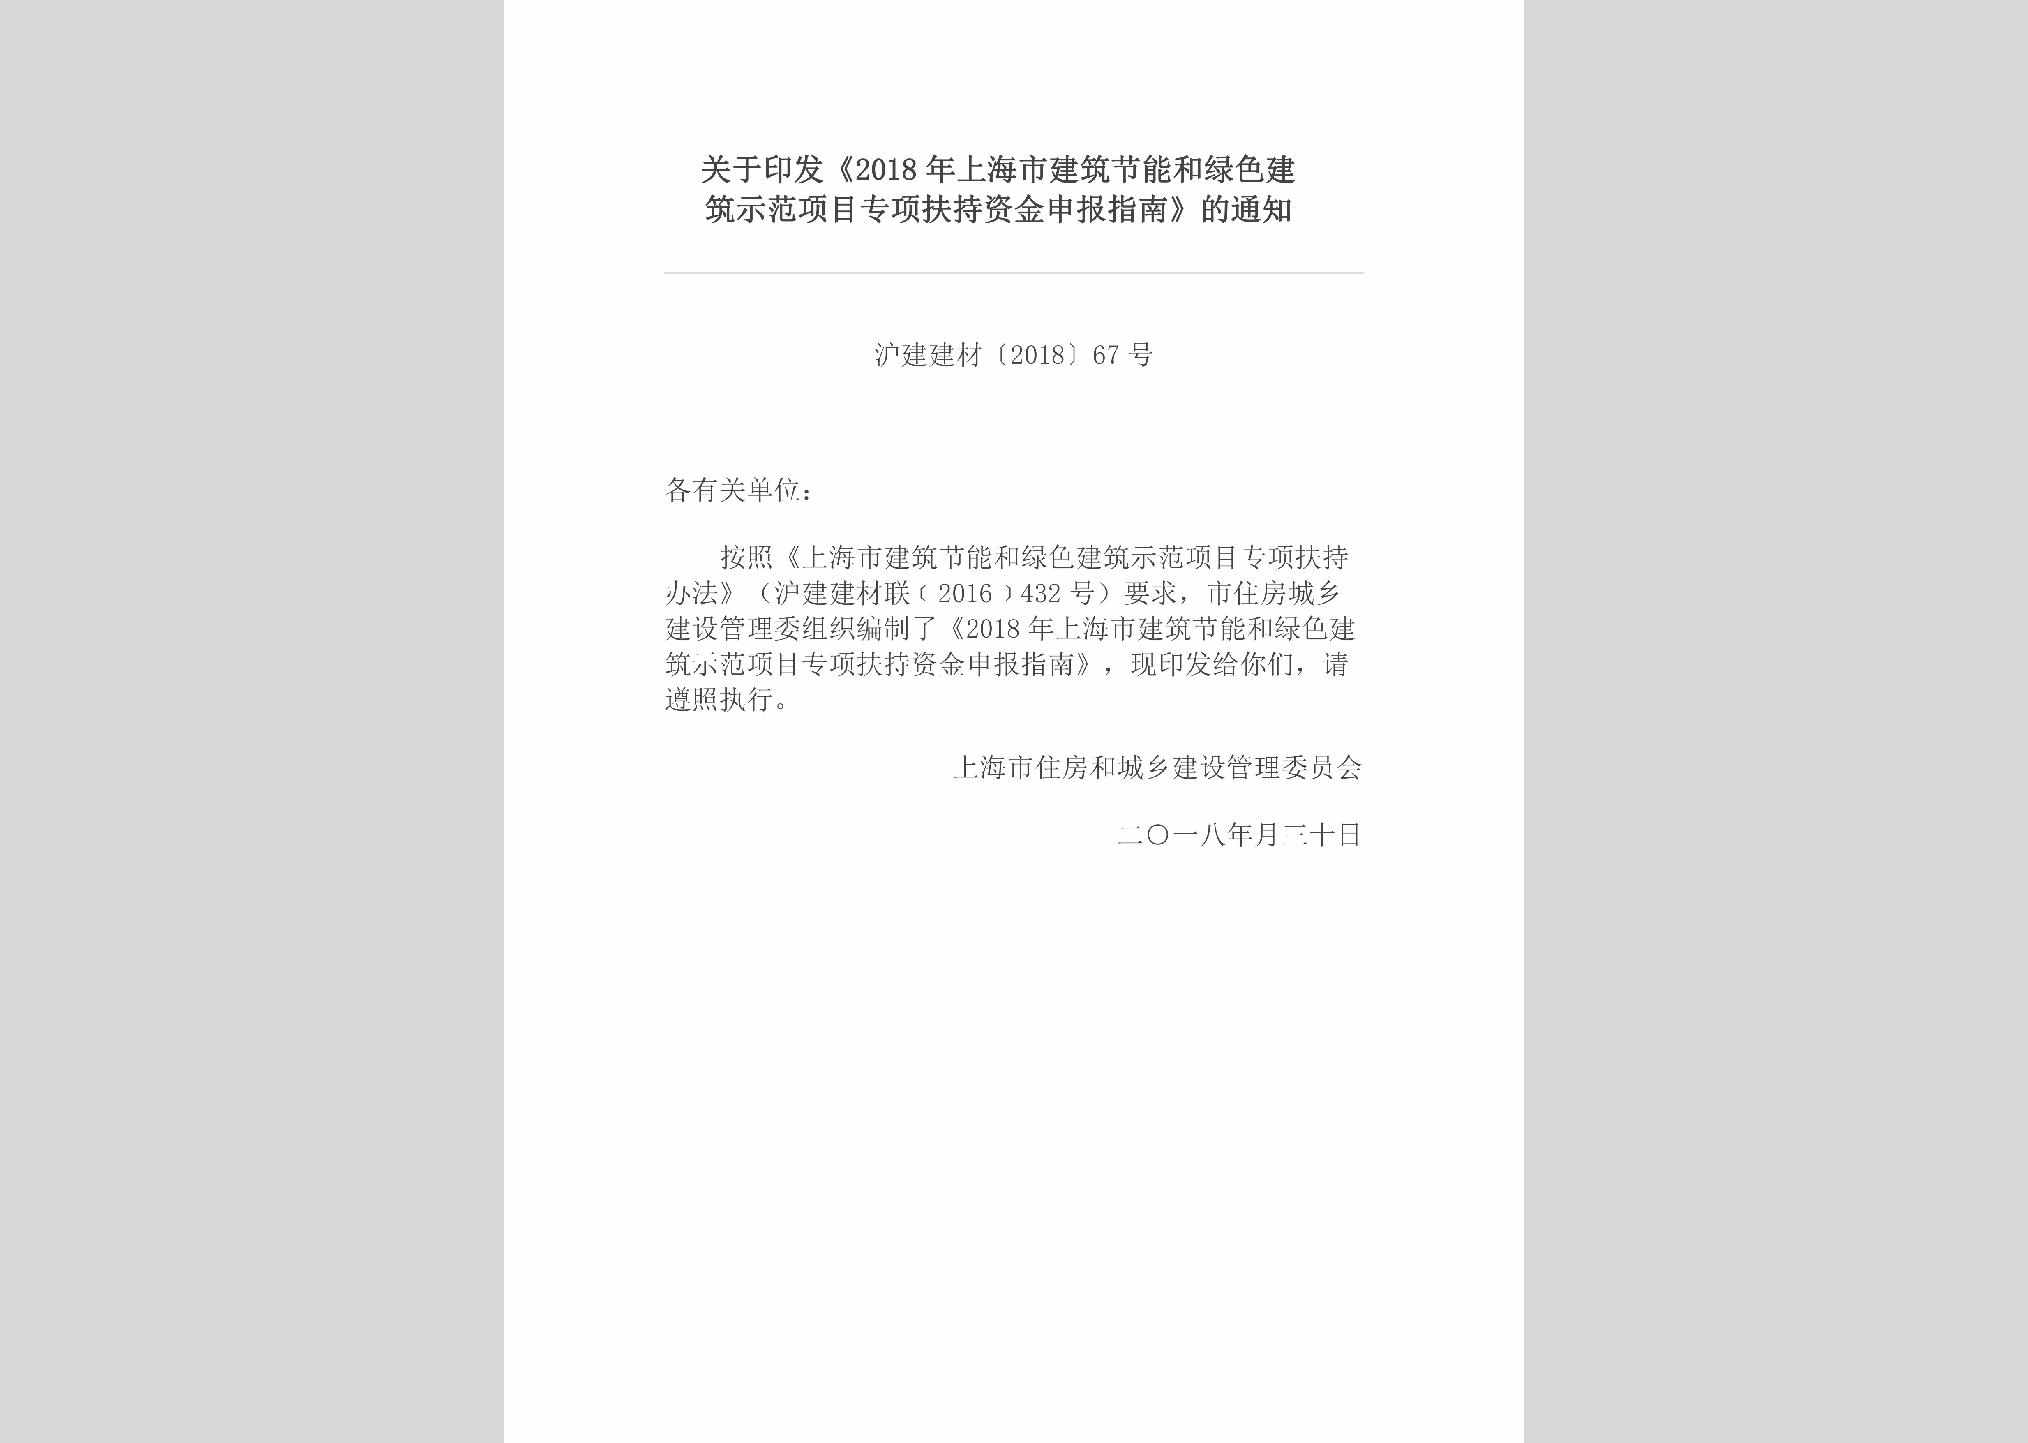 沪建建材[2018]67号：关于印发《2018年上海市建筑节能和绿色建筑示范项目专项扶持资金申报指南》的通知